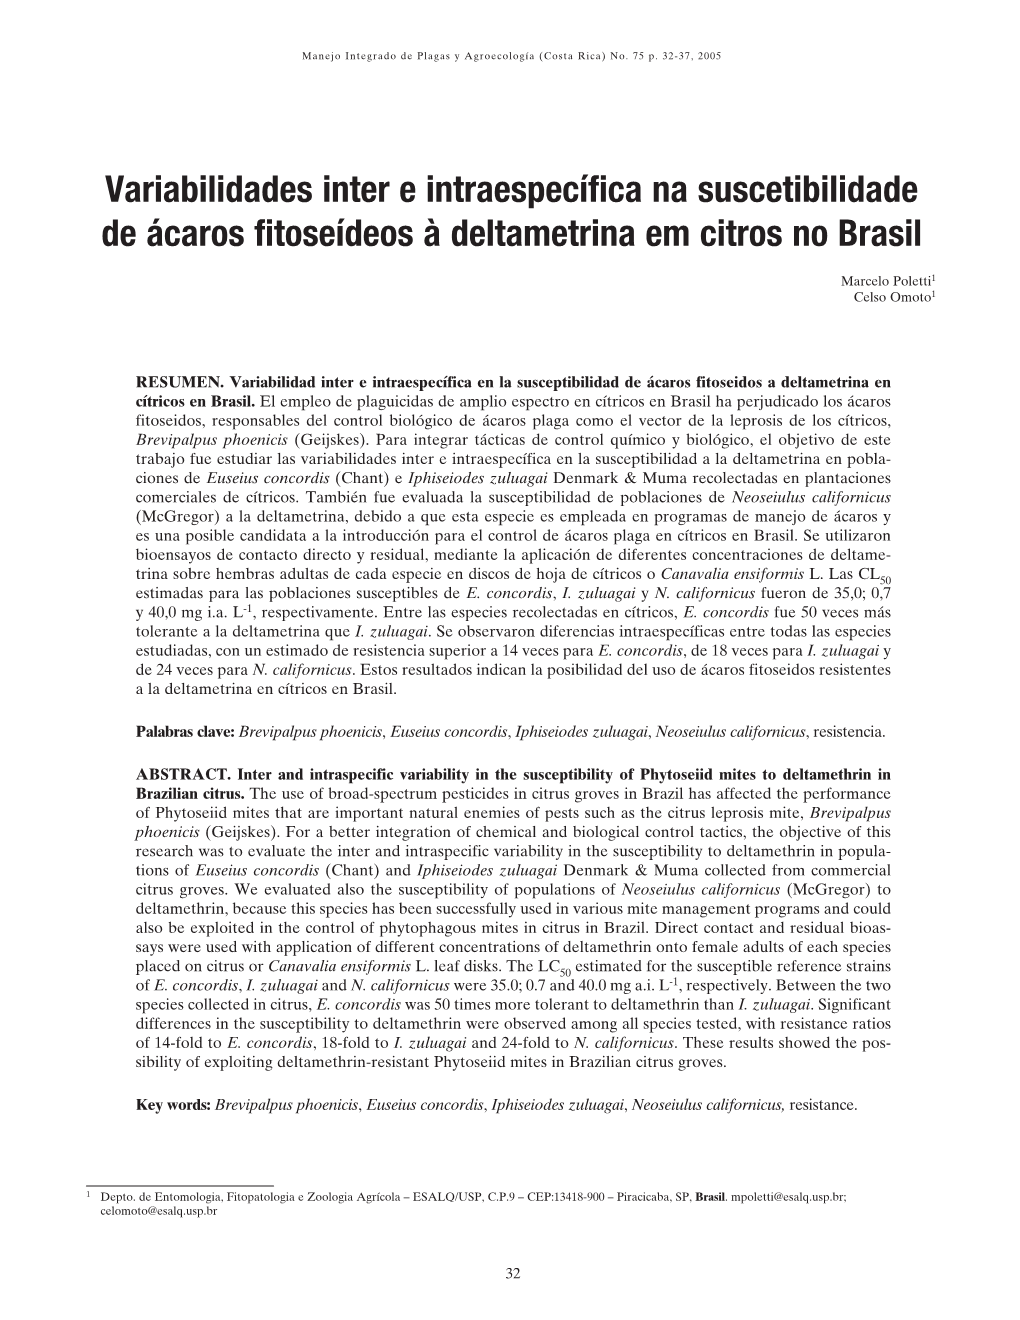 Variabilidades Inter E Intraespecífica Na Suscetibilidade De Ácaros Fitoseídeos À Deltametrina Em Citros No Brasil